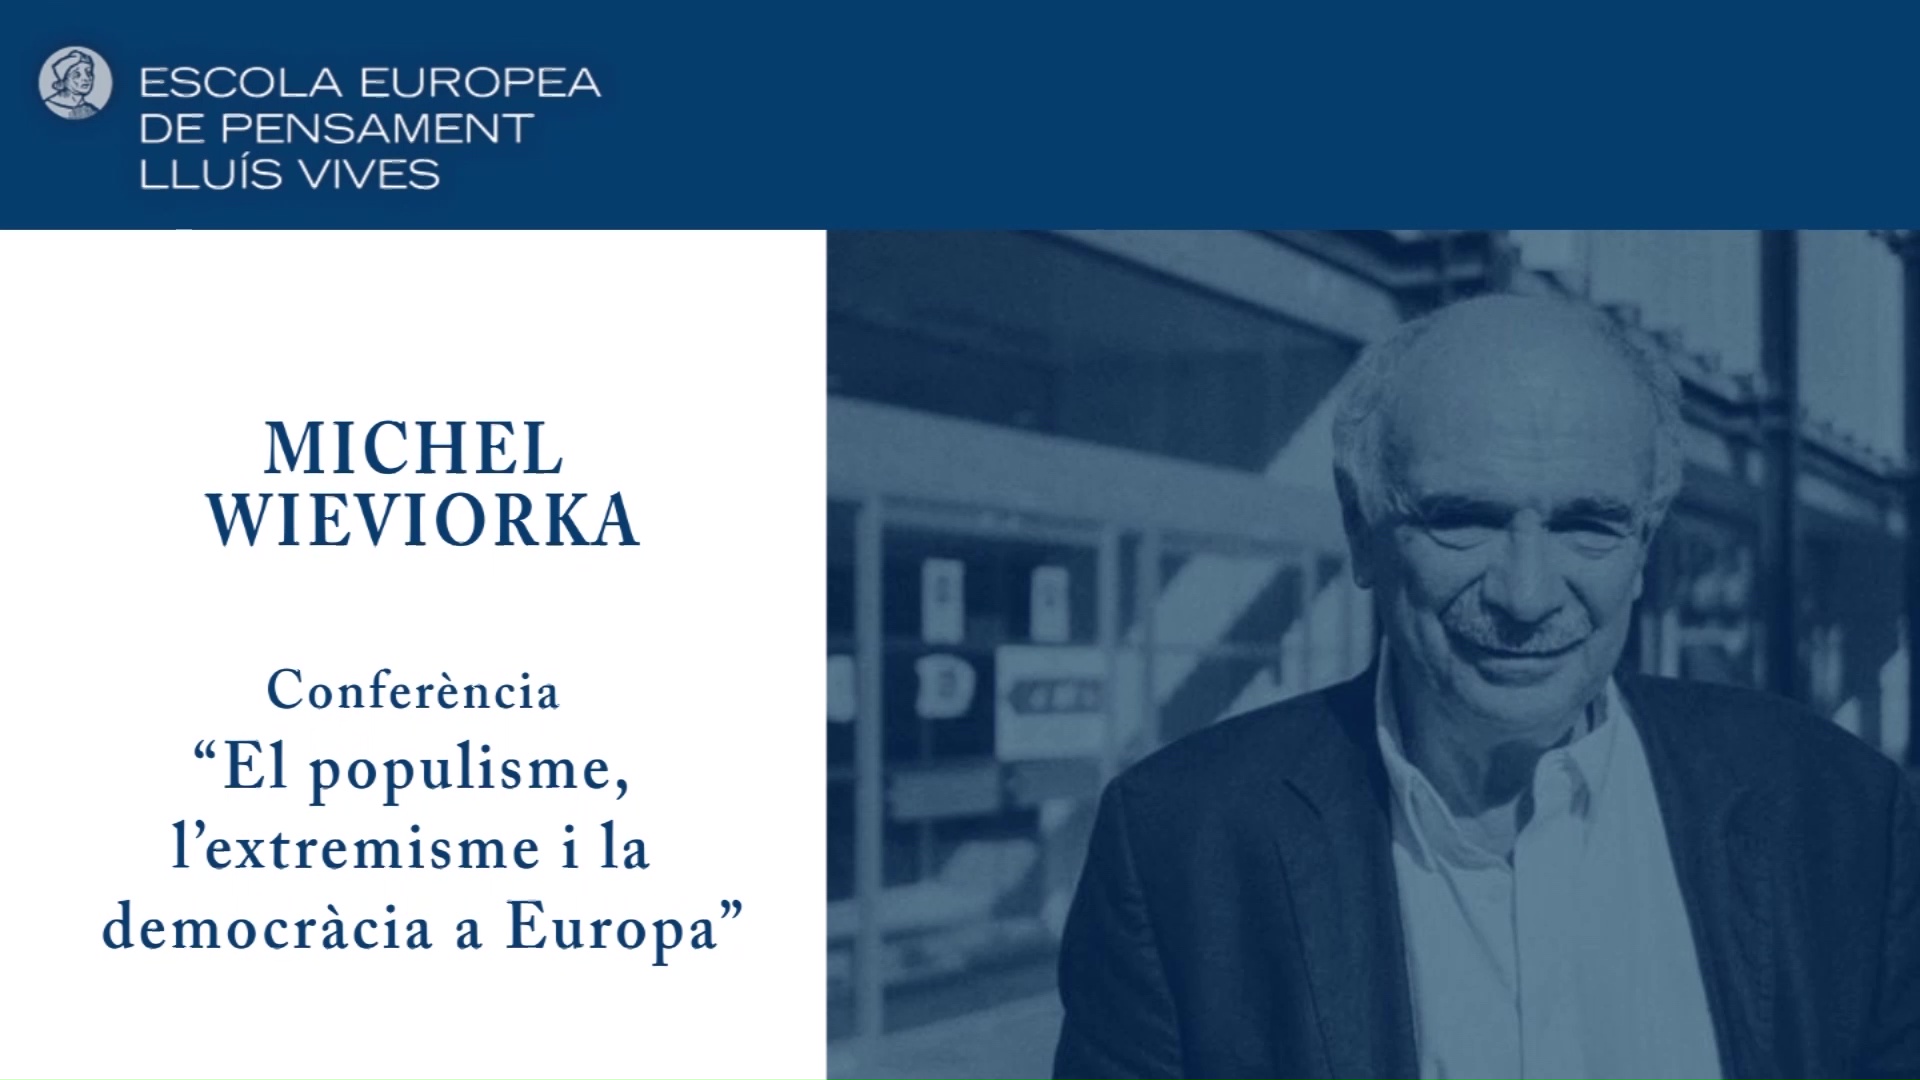 Imagen de la portada del video;Conferència 'El populisme, l’extremisme i la democràcia a Europa' a càrrec de Michel Wieviorka.